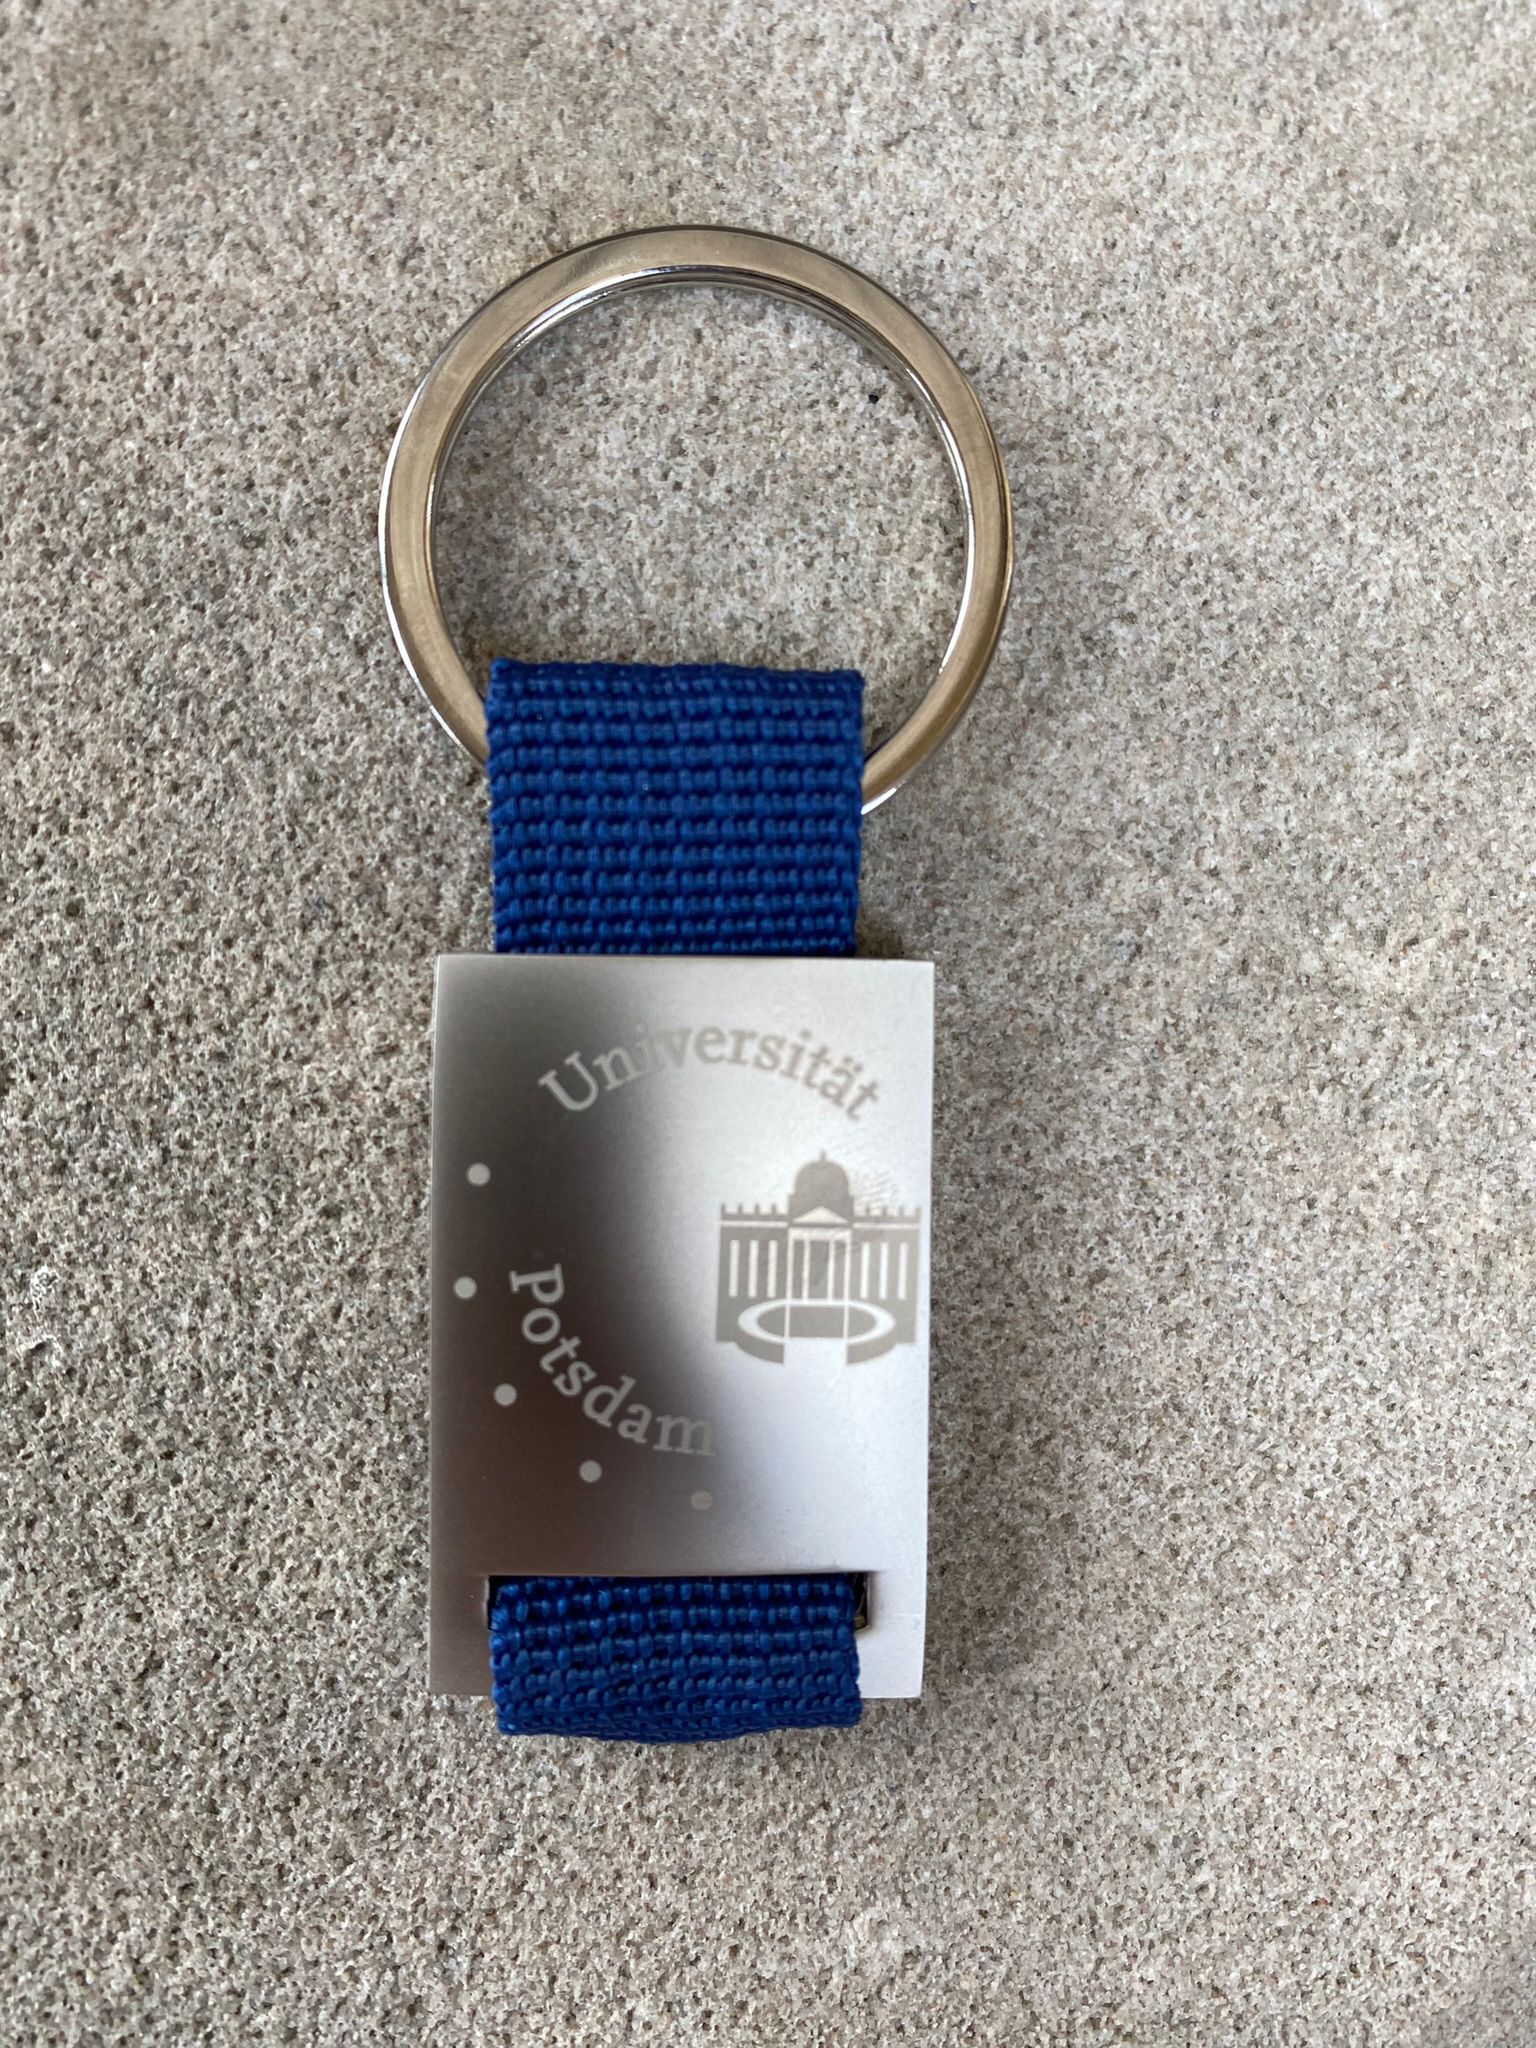 Schlüsselanhänger-Logo. Abgebildet ist ein Schlüsselanhänger aus Edelstahl mit einem blauen Band und dem Universitätslogo.